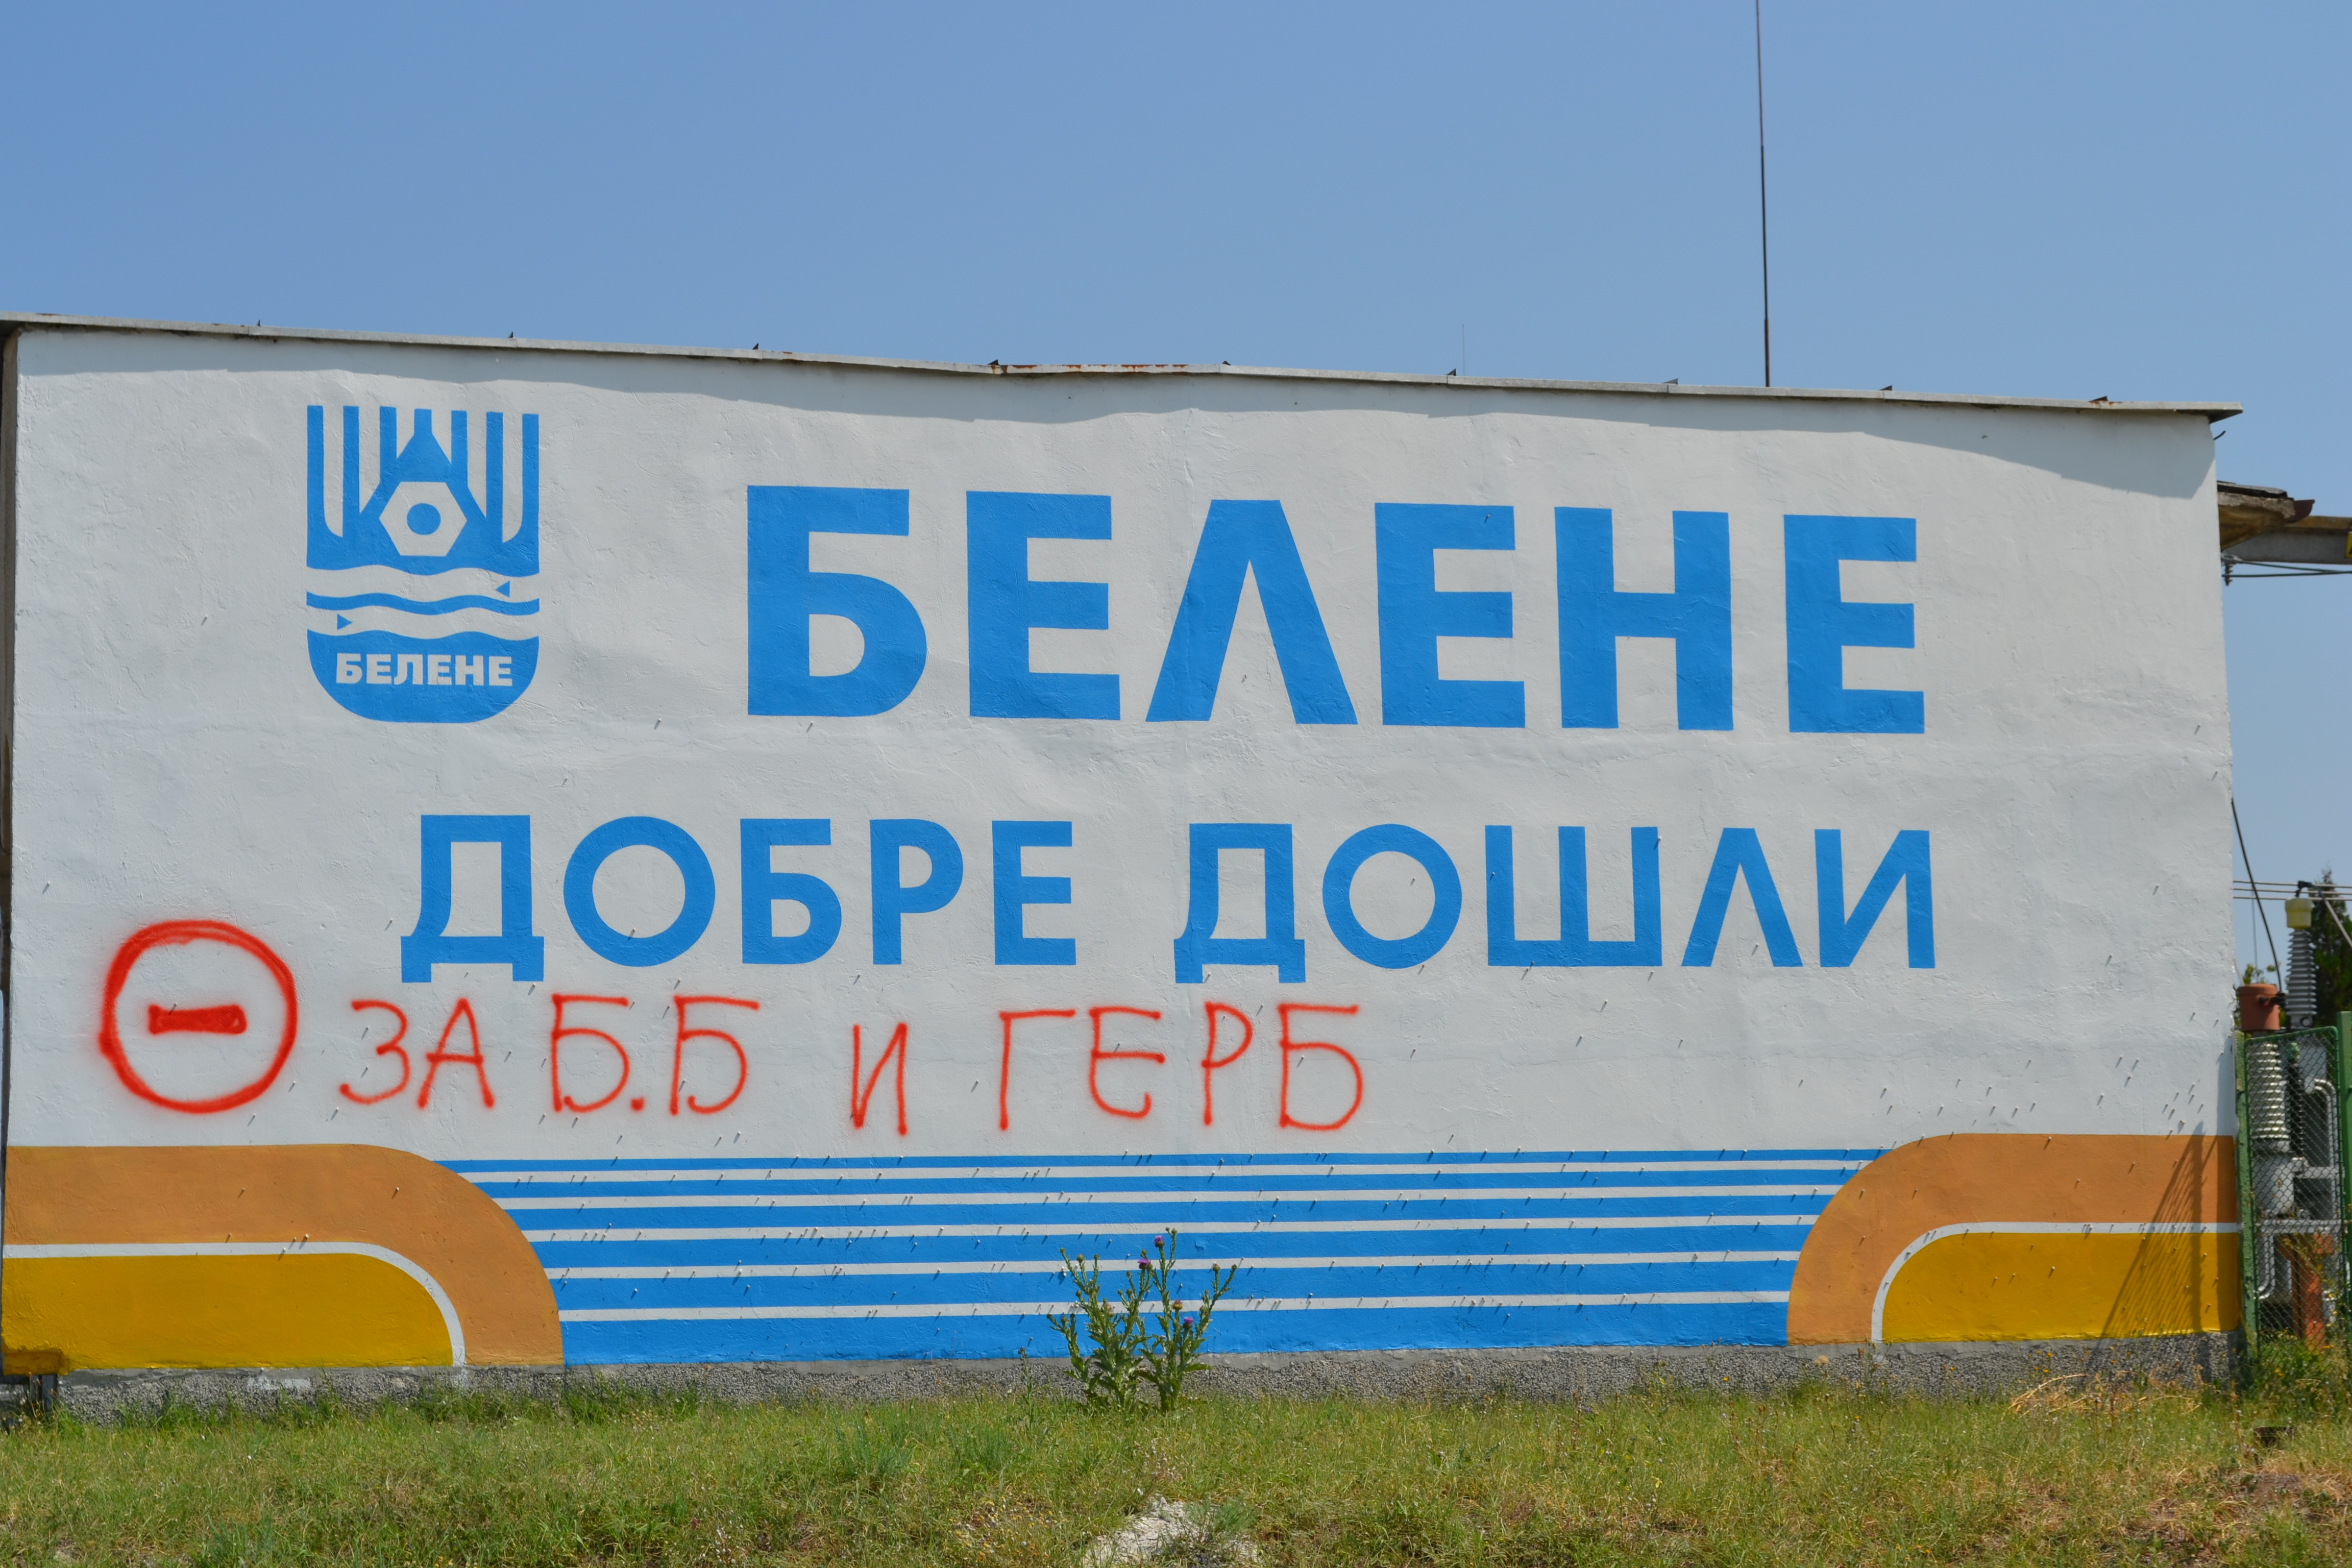 Руският зам.-министър каза, че България е заявила възможност за връщане към проекта ”Белене” (Снимка архив)